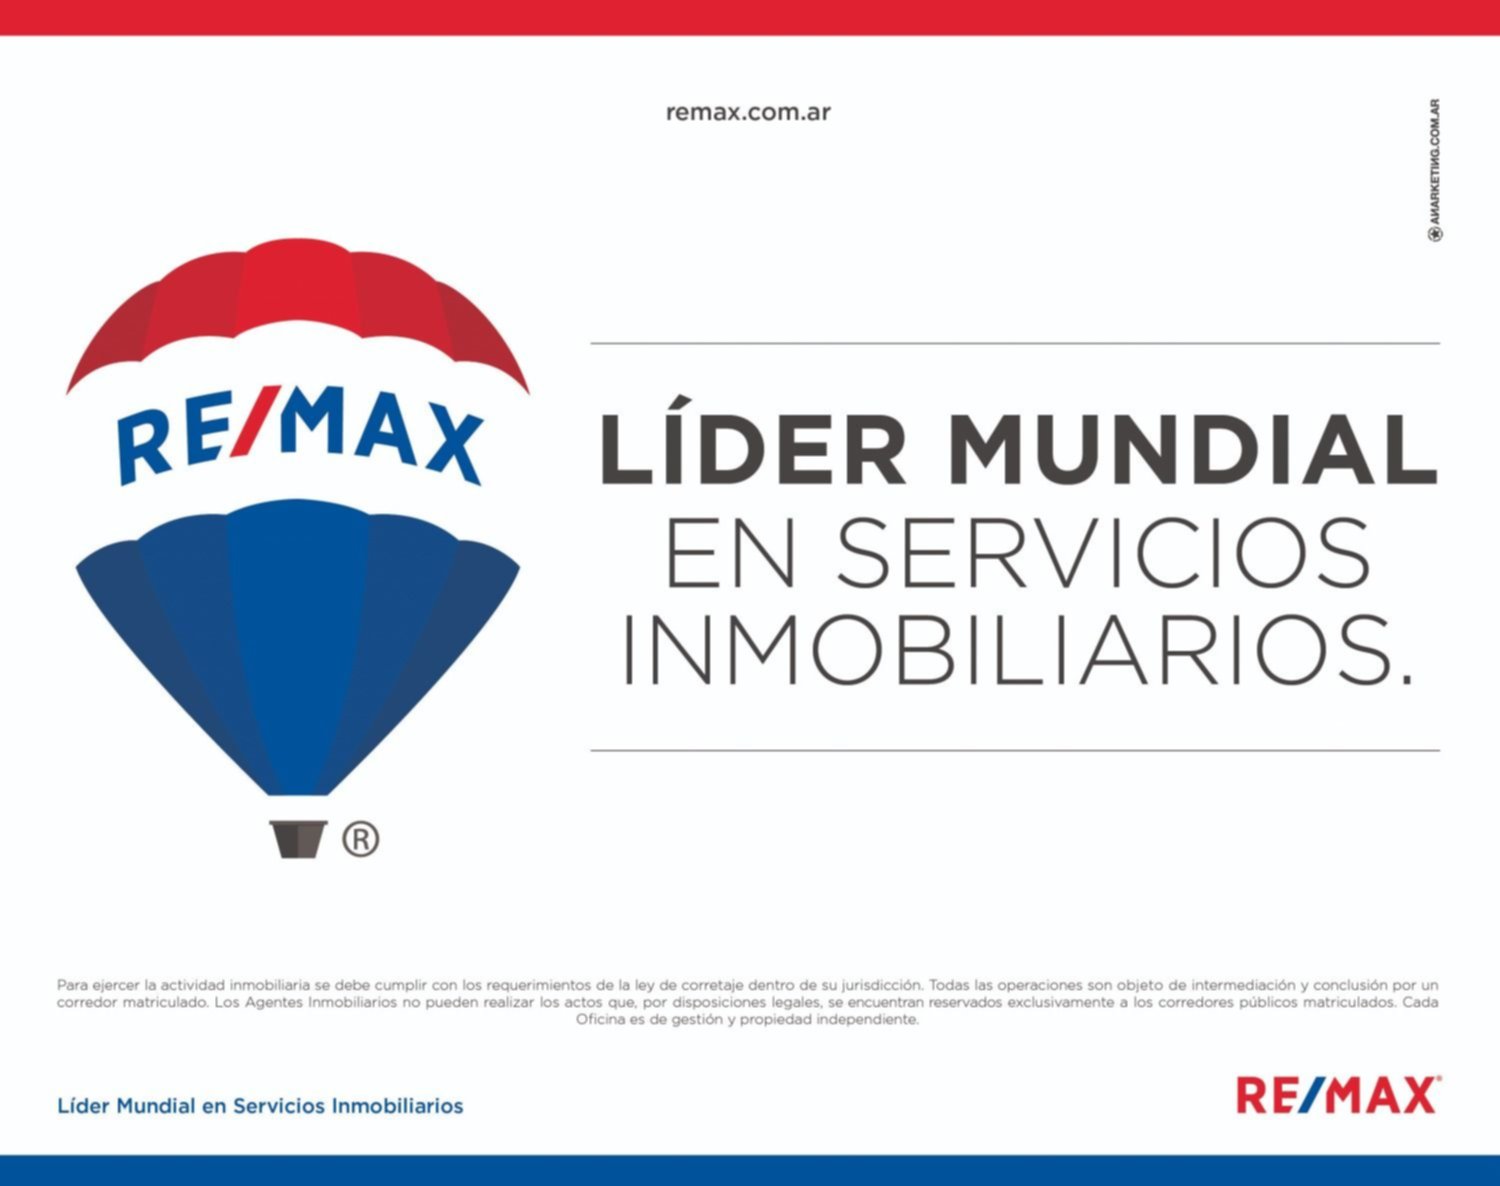 Remax, líder en servicio inmobiliario